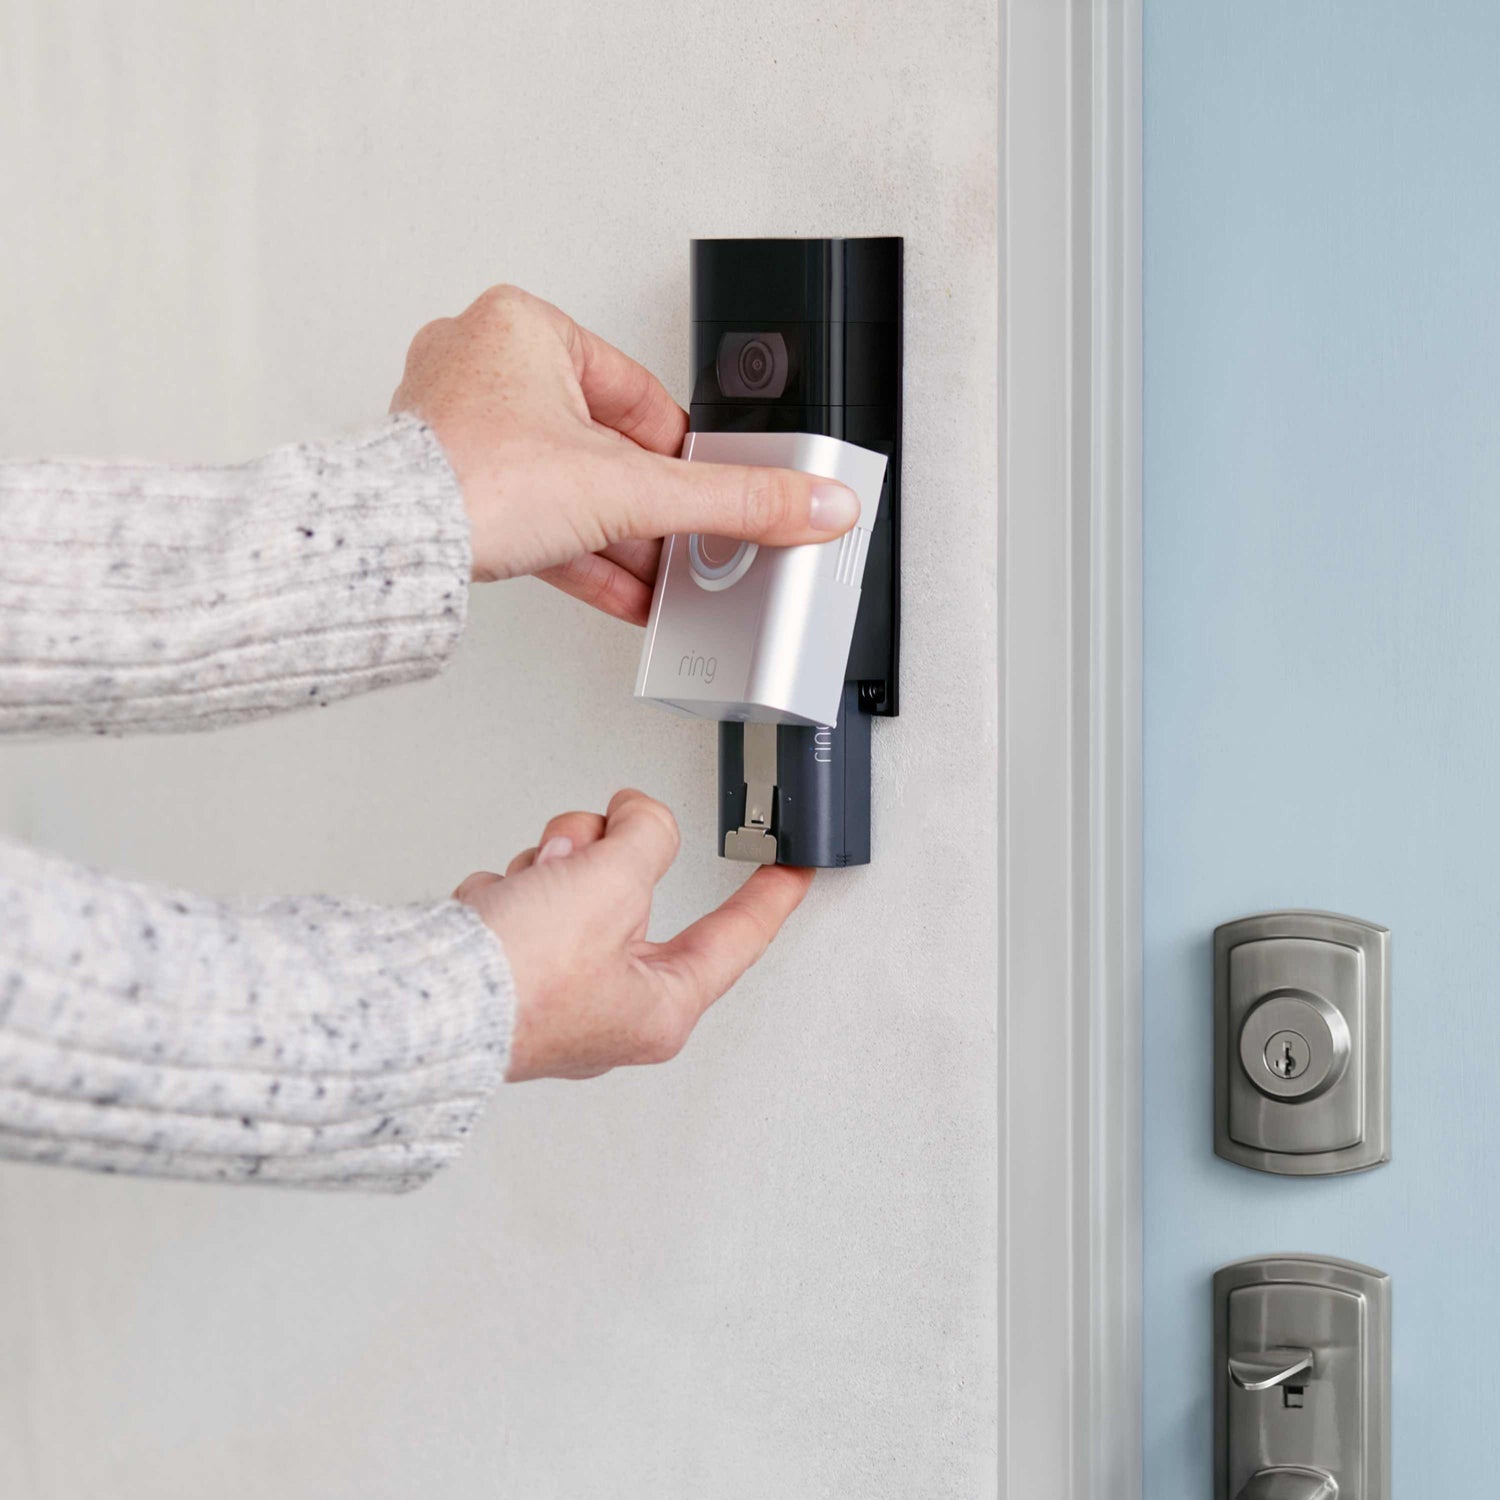 Video Doorbell 3 Plus (for Certified Refurbished) - Video Doorbell 3 Plus (for Certified Refurbished) - 